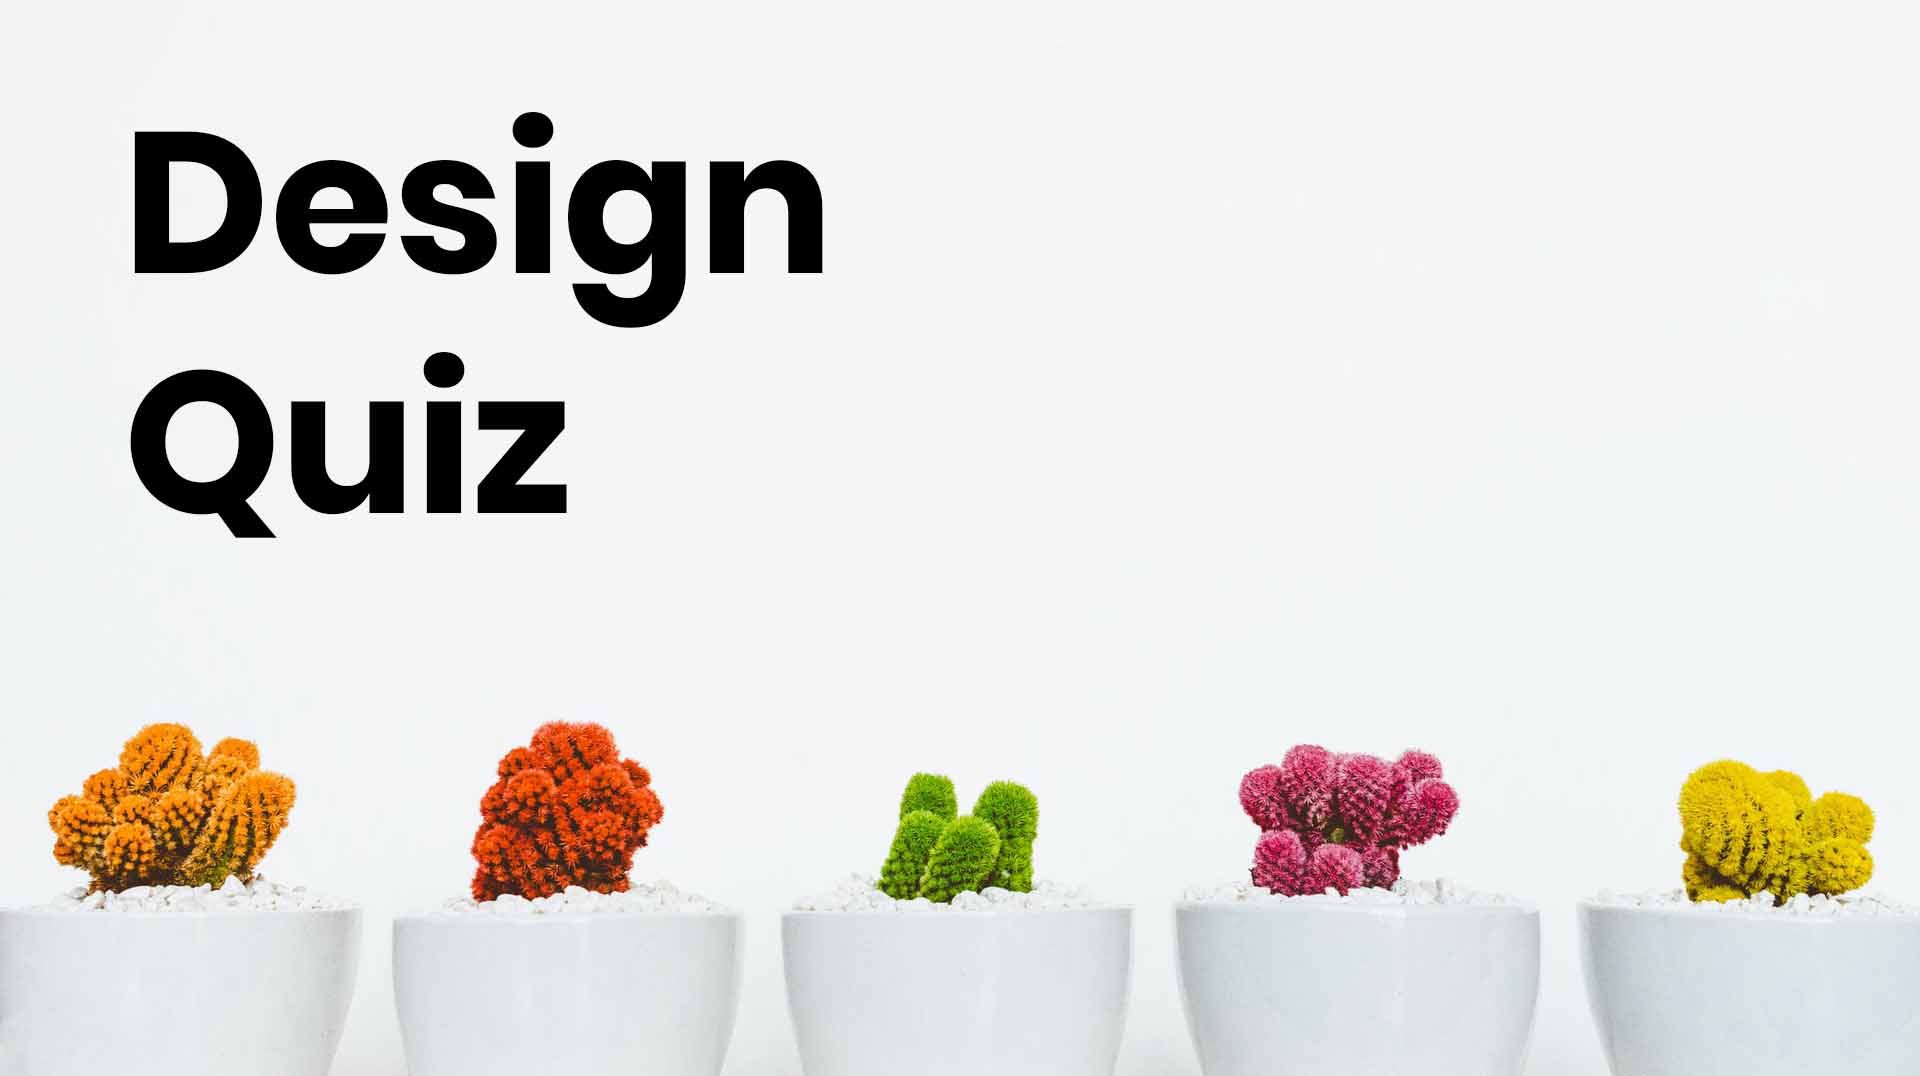 Design-Quiz-opt